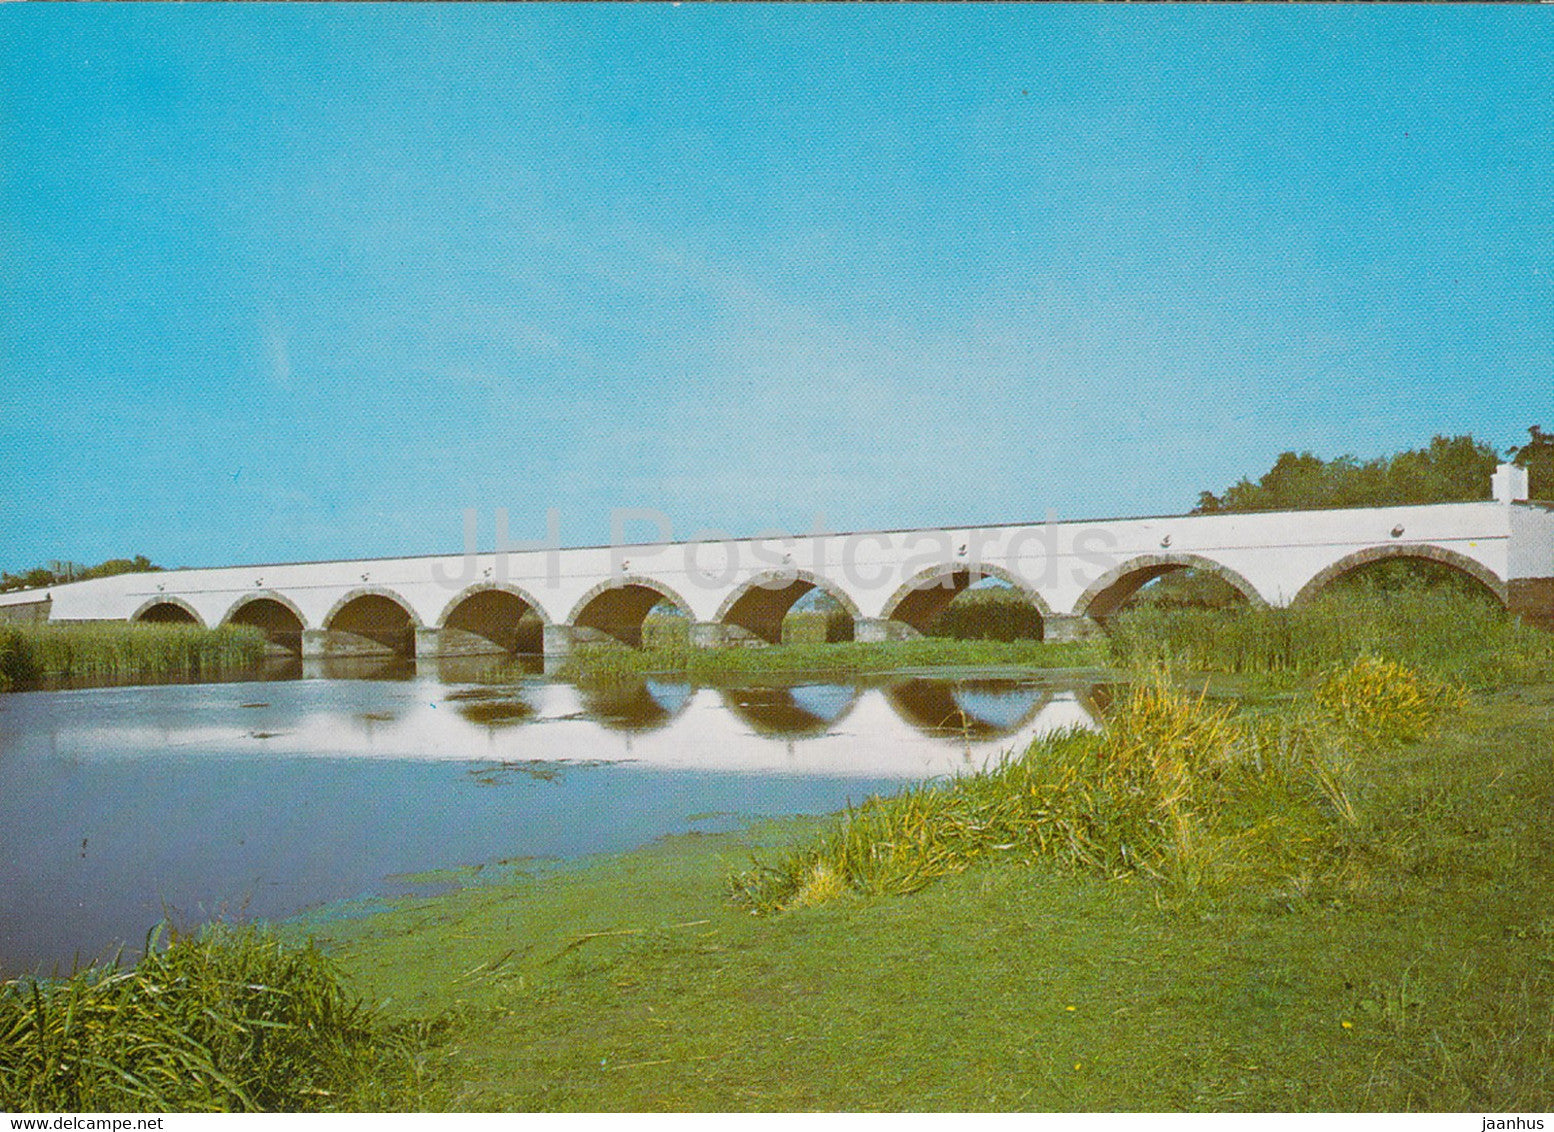 Hortobagy - Bridge with nine arches - Hungary - unused - JH Postcards